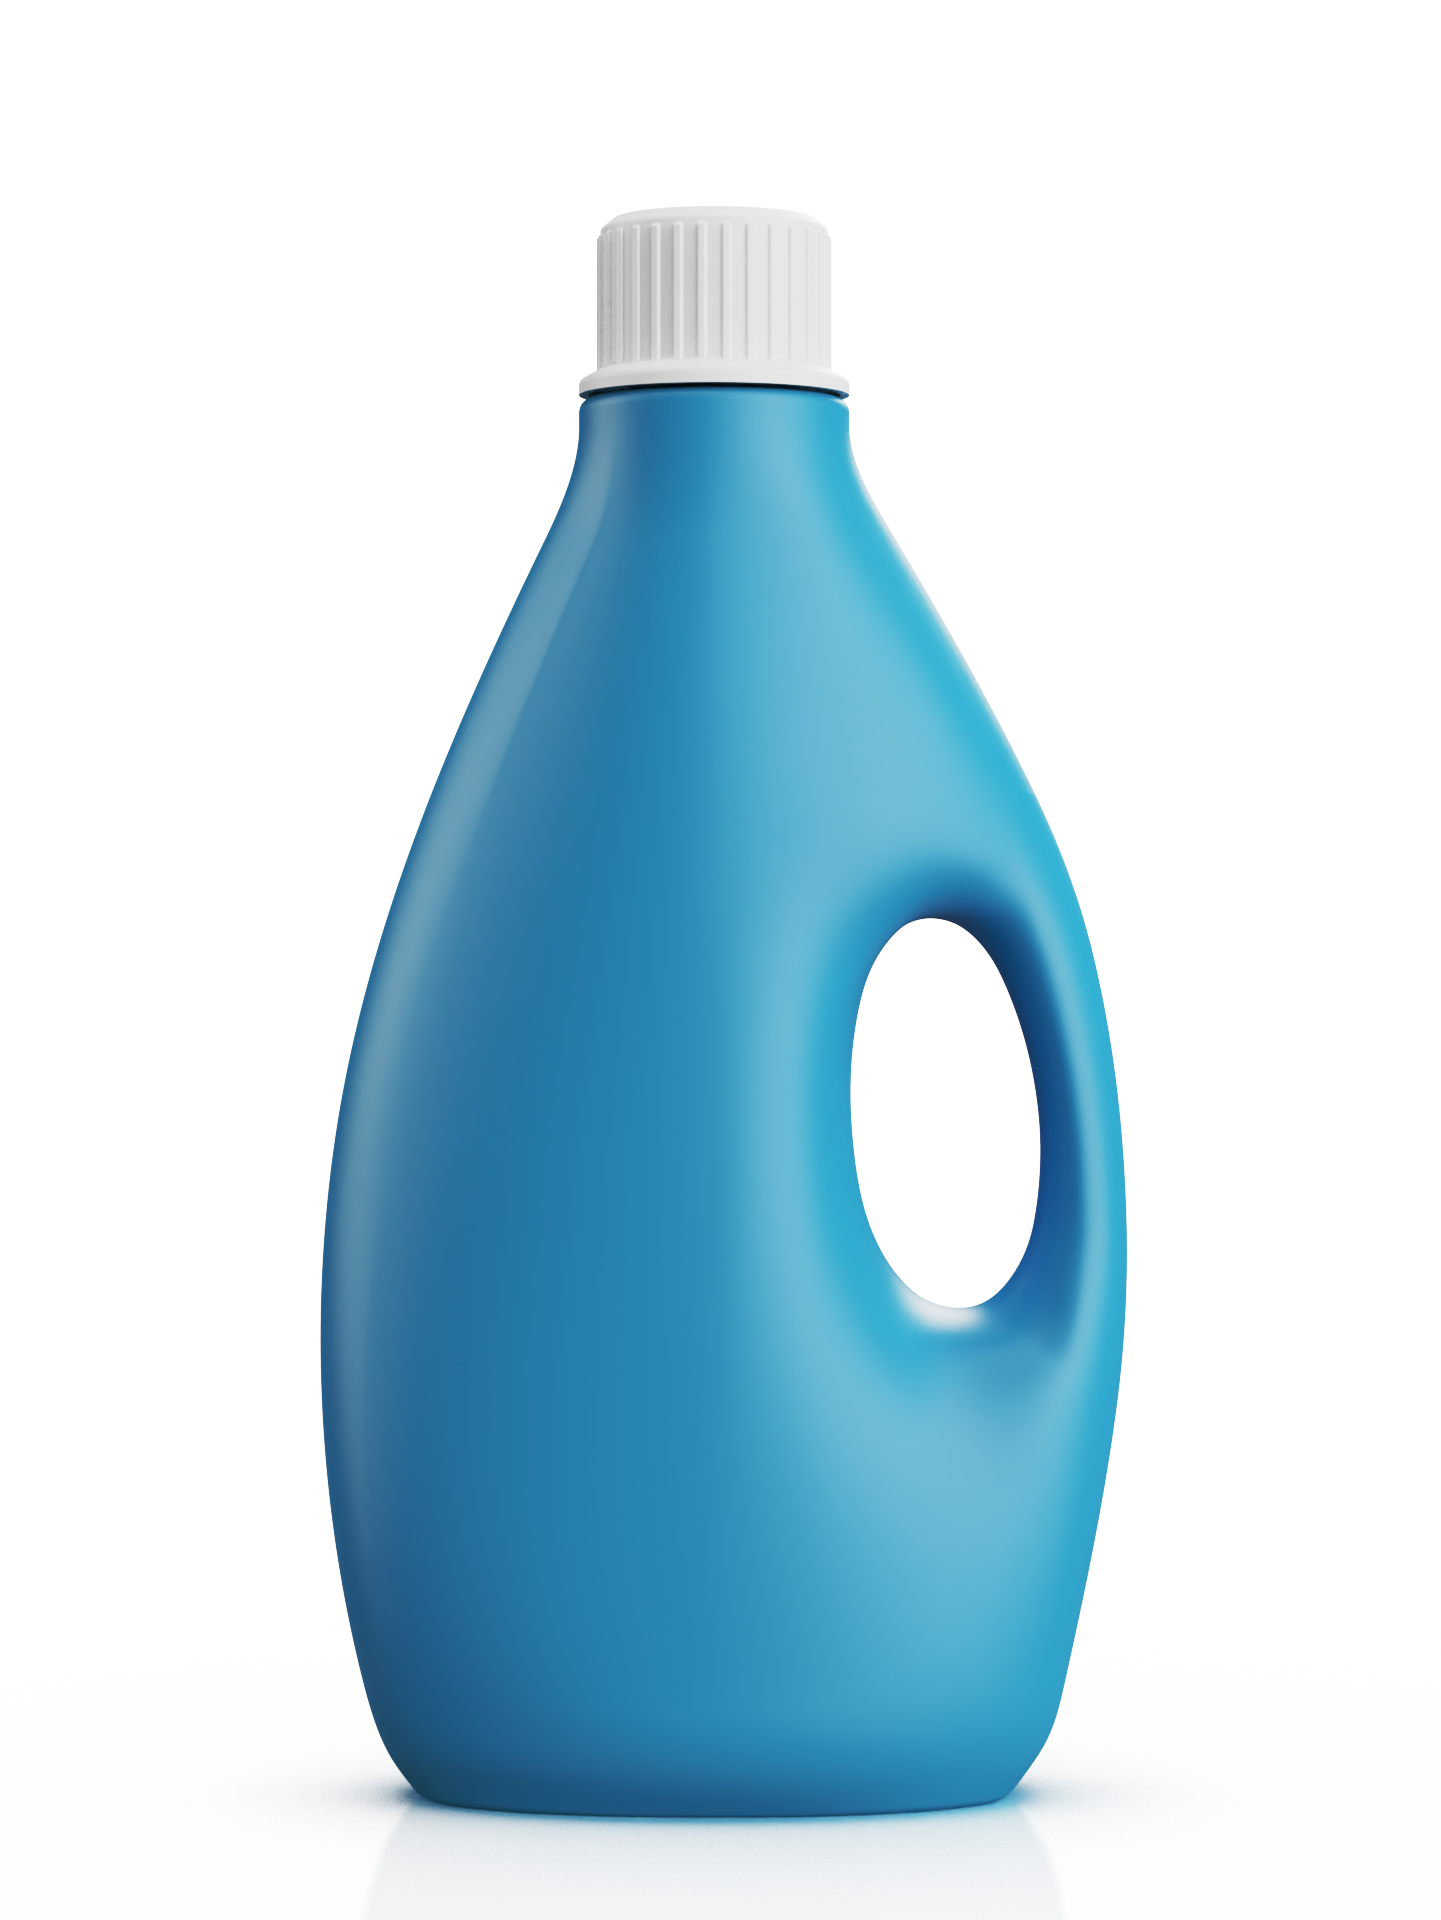 Opaque detergent bottle rendered